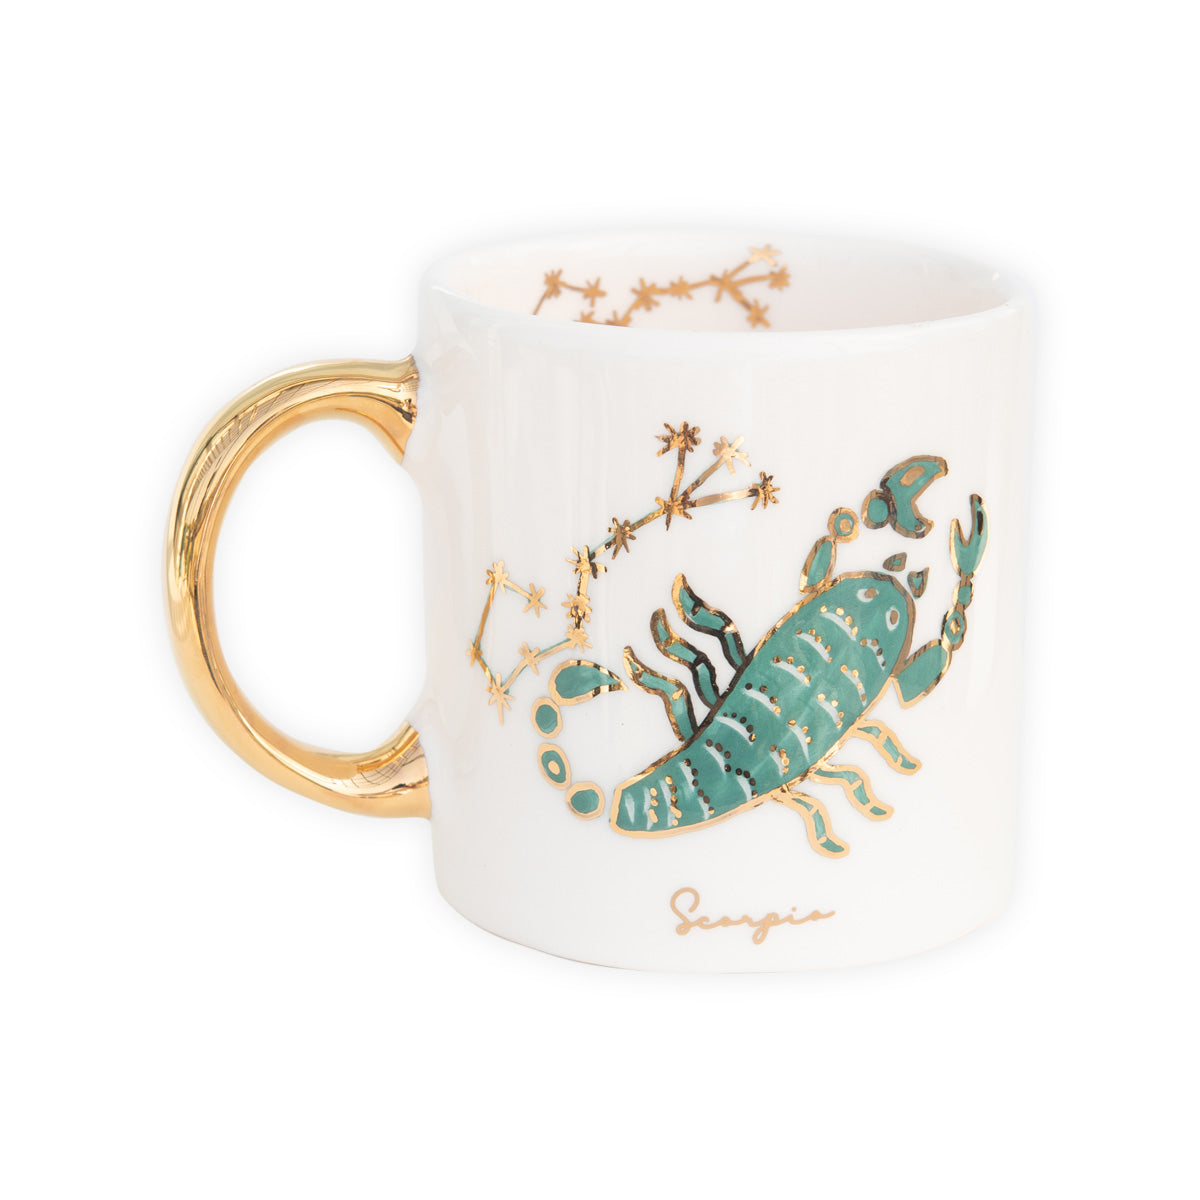 Zodiac Sign Ceramic Mug